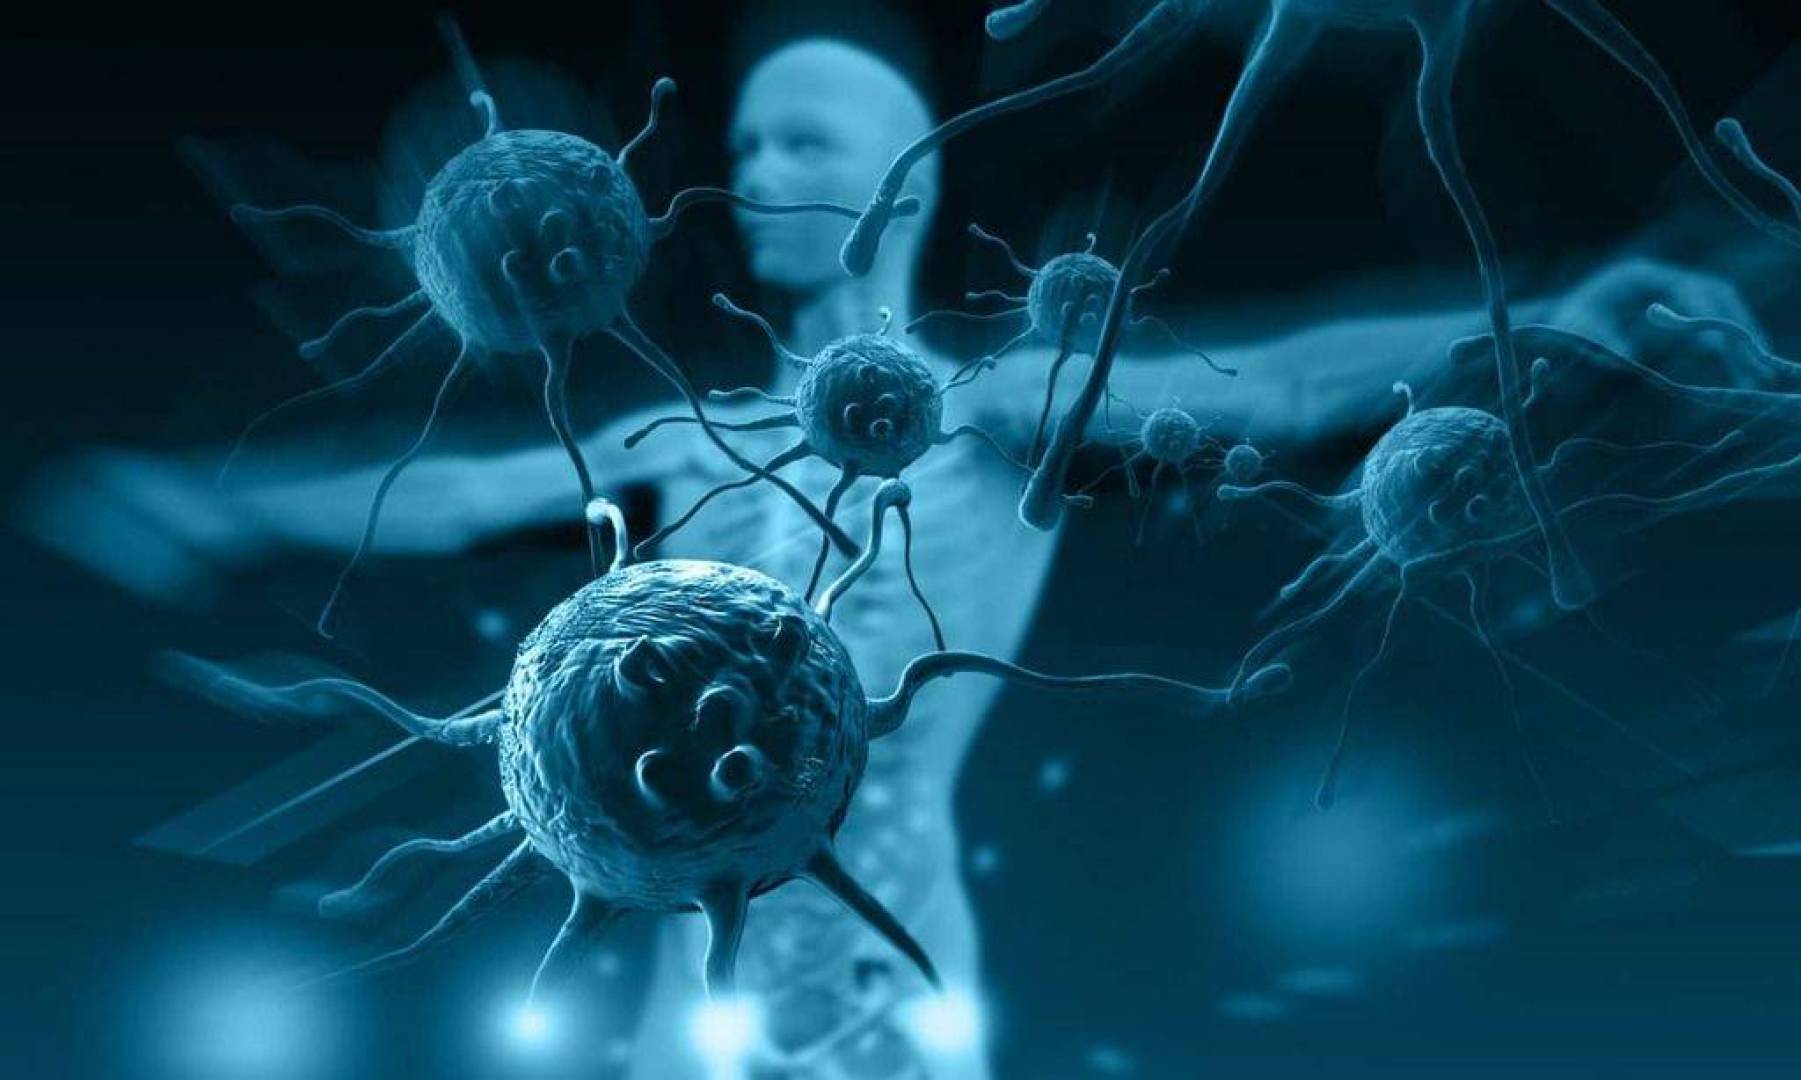 اكتشاف أصول مرض الخلايا المناعية النسيجية  “LCH”